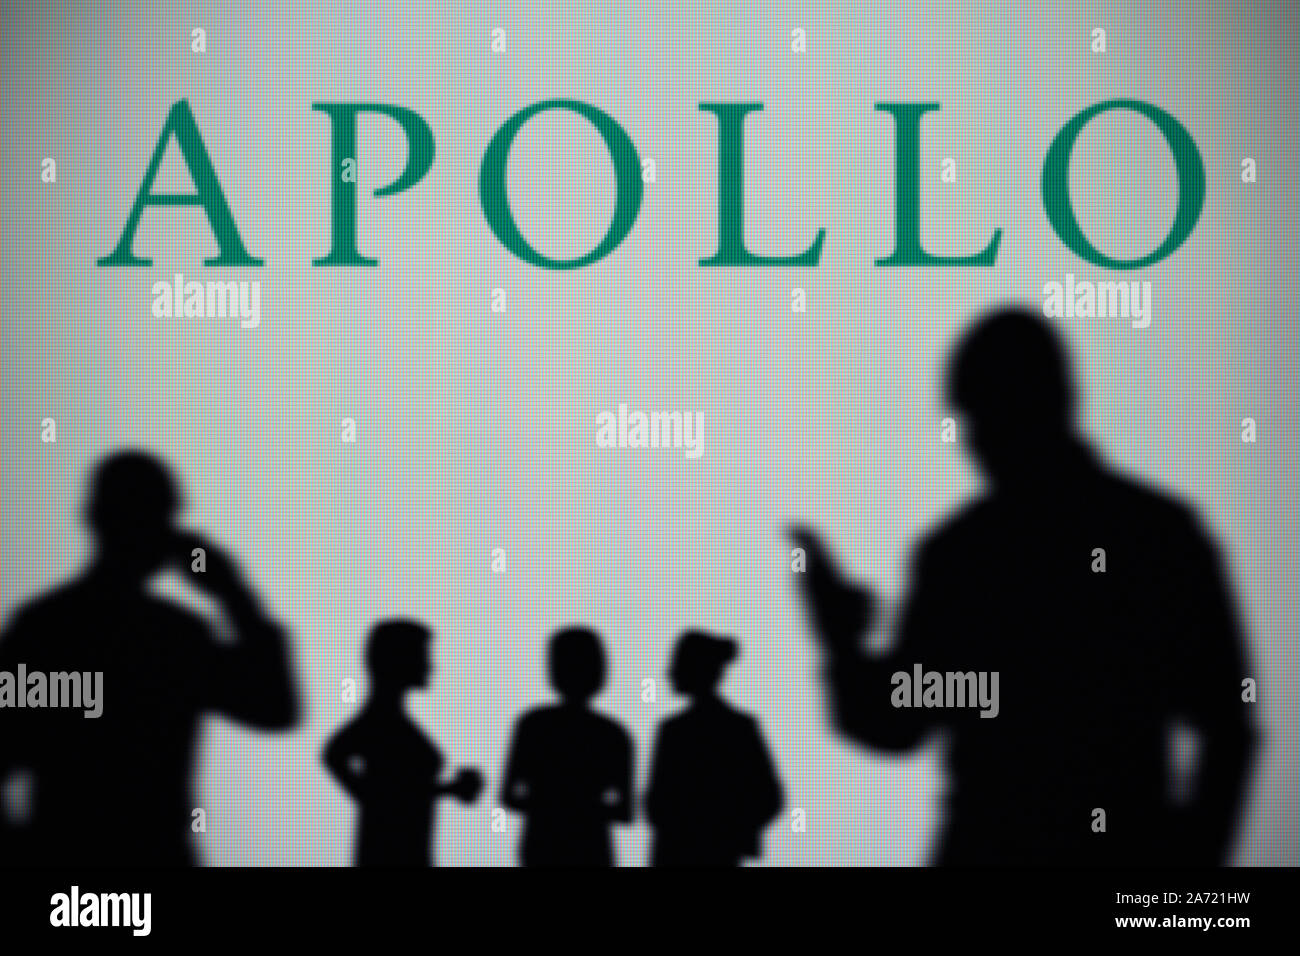 Die Apollo Global Management Logo ist auf einen LED-Bildschirm im Hintergrund, während eine Silhouette Person ein Smartphone verwendet (nur redaktionelle Nutzung) Stockfoto